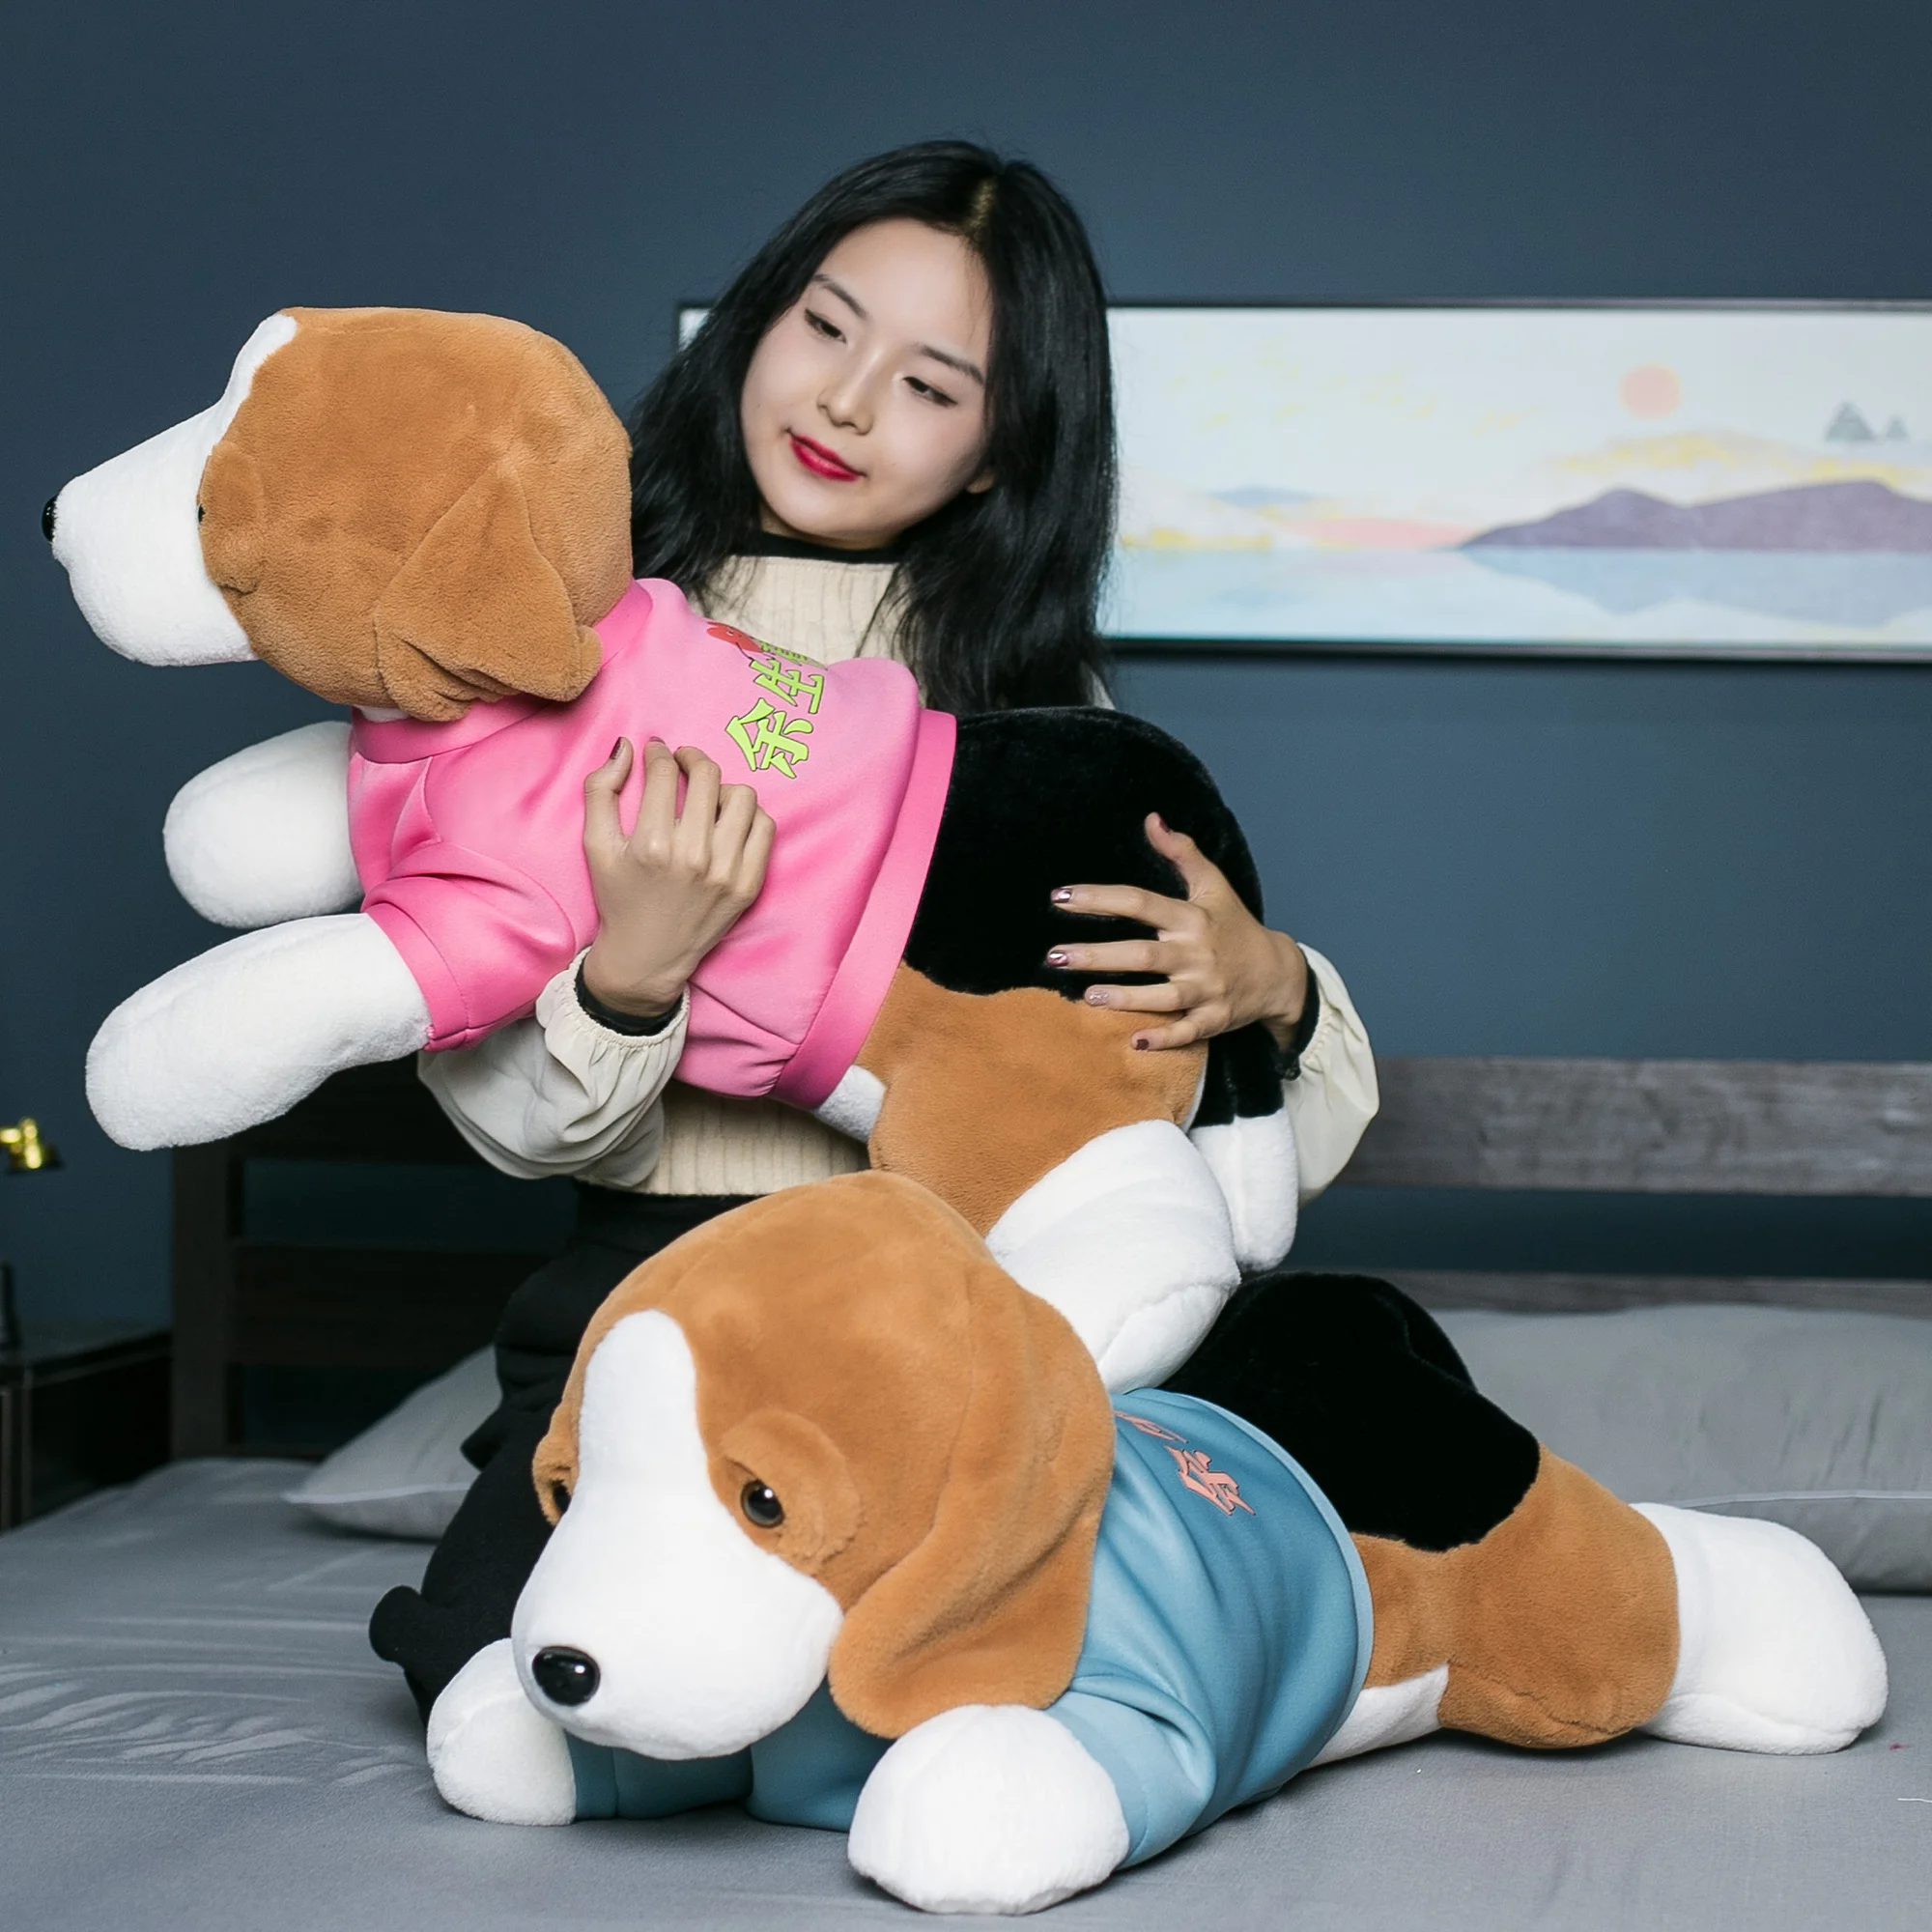 https://ae01.alicdn.com/kf/Hcfa34ad689f2454784f68ebdcbbe8bef8/Simulation-80cm-Dressing-Beagles-Dog-Plush-Toy-Stuffed-Lifelike-Animals-Puppy-Hug-Throw-Pillow-Boy-Birthday.jpg